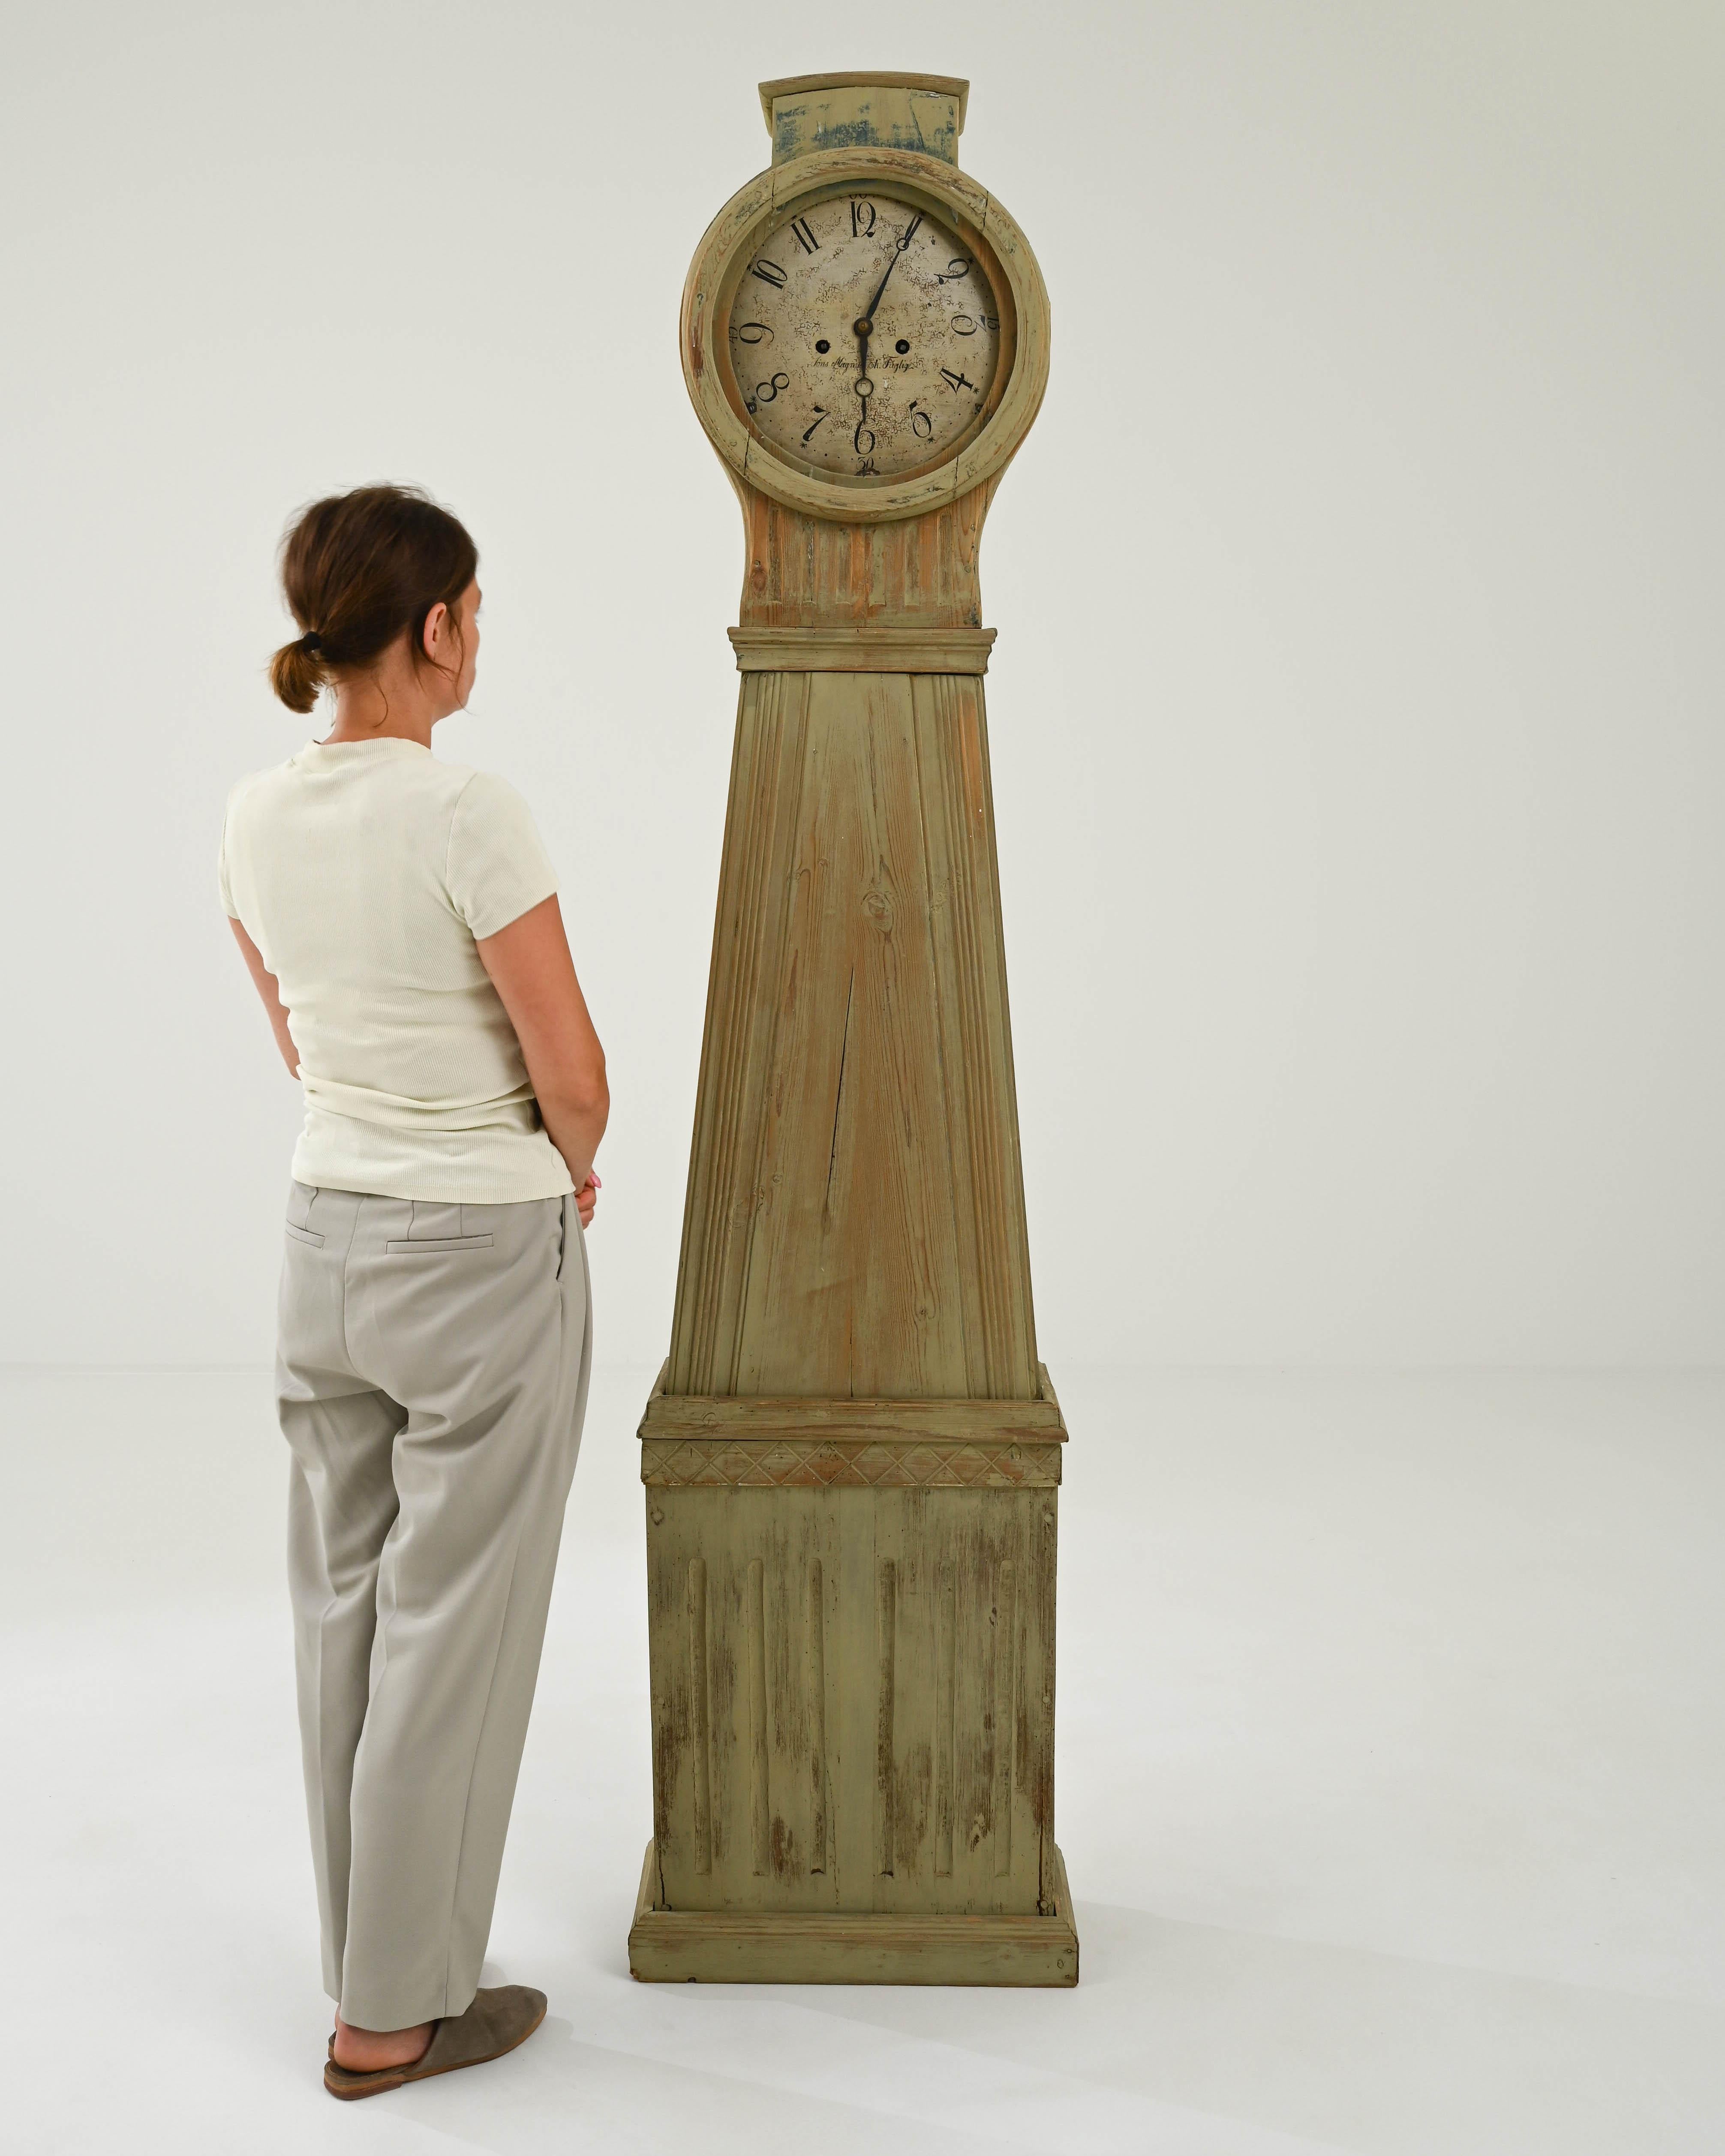 Cette horloge ancienne en bois allie une silhouette saisissante à une patine sourde. Construit en Suède au début des années 1800, l'élégante simplicité de son design reflète le style gustavien en vogue à l'époque. Les lignes épurées et la forme